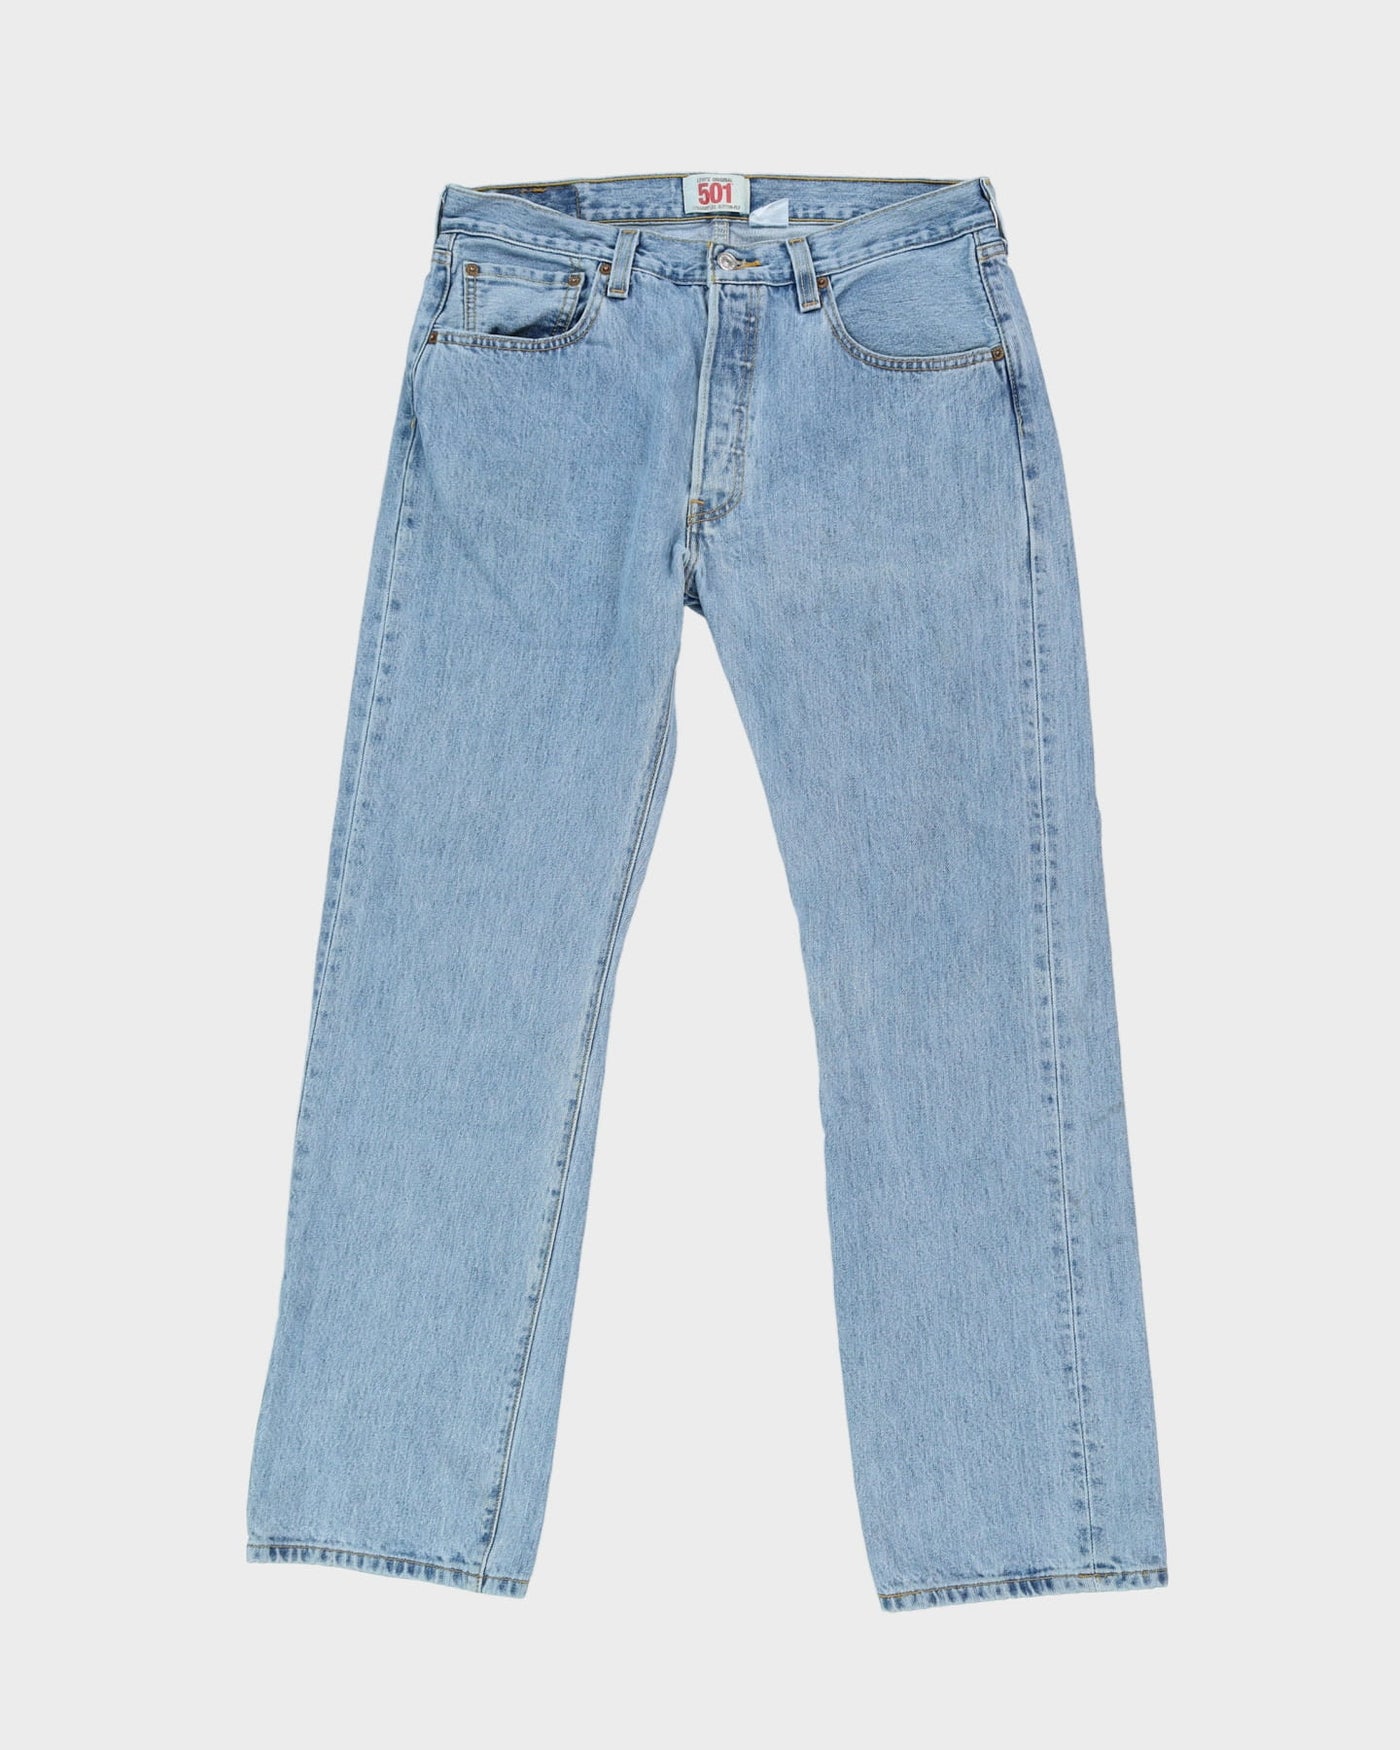 Levi's 501 Blue Jeans - W34 L33